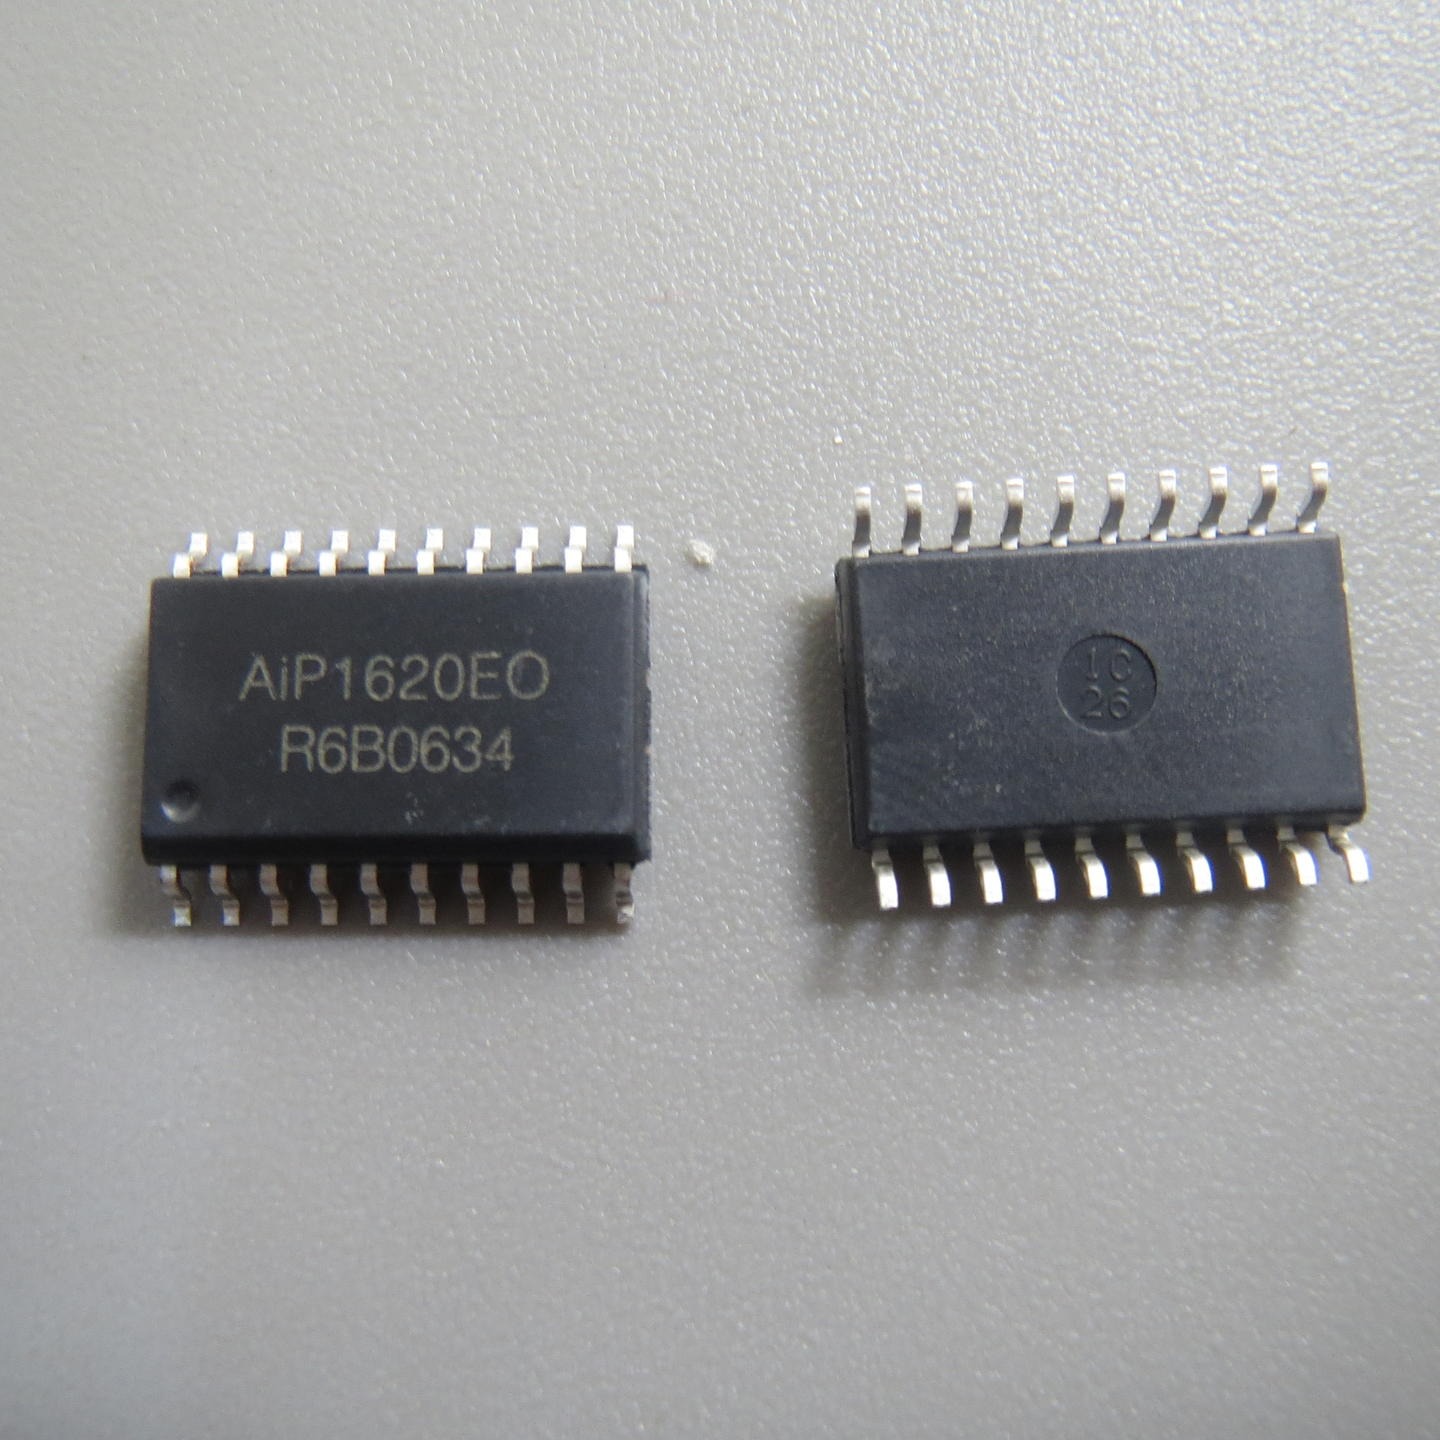 RE16LA4F152W4707  触摸芯片 单片机 电源管理芯片 放算IC专业代理商芯片配单 经销与代理